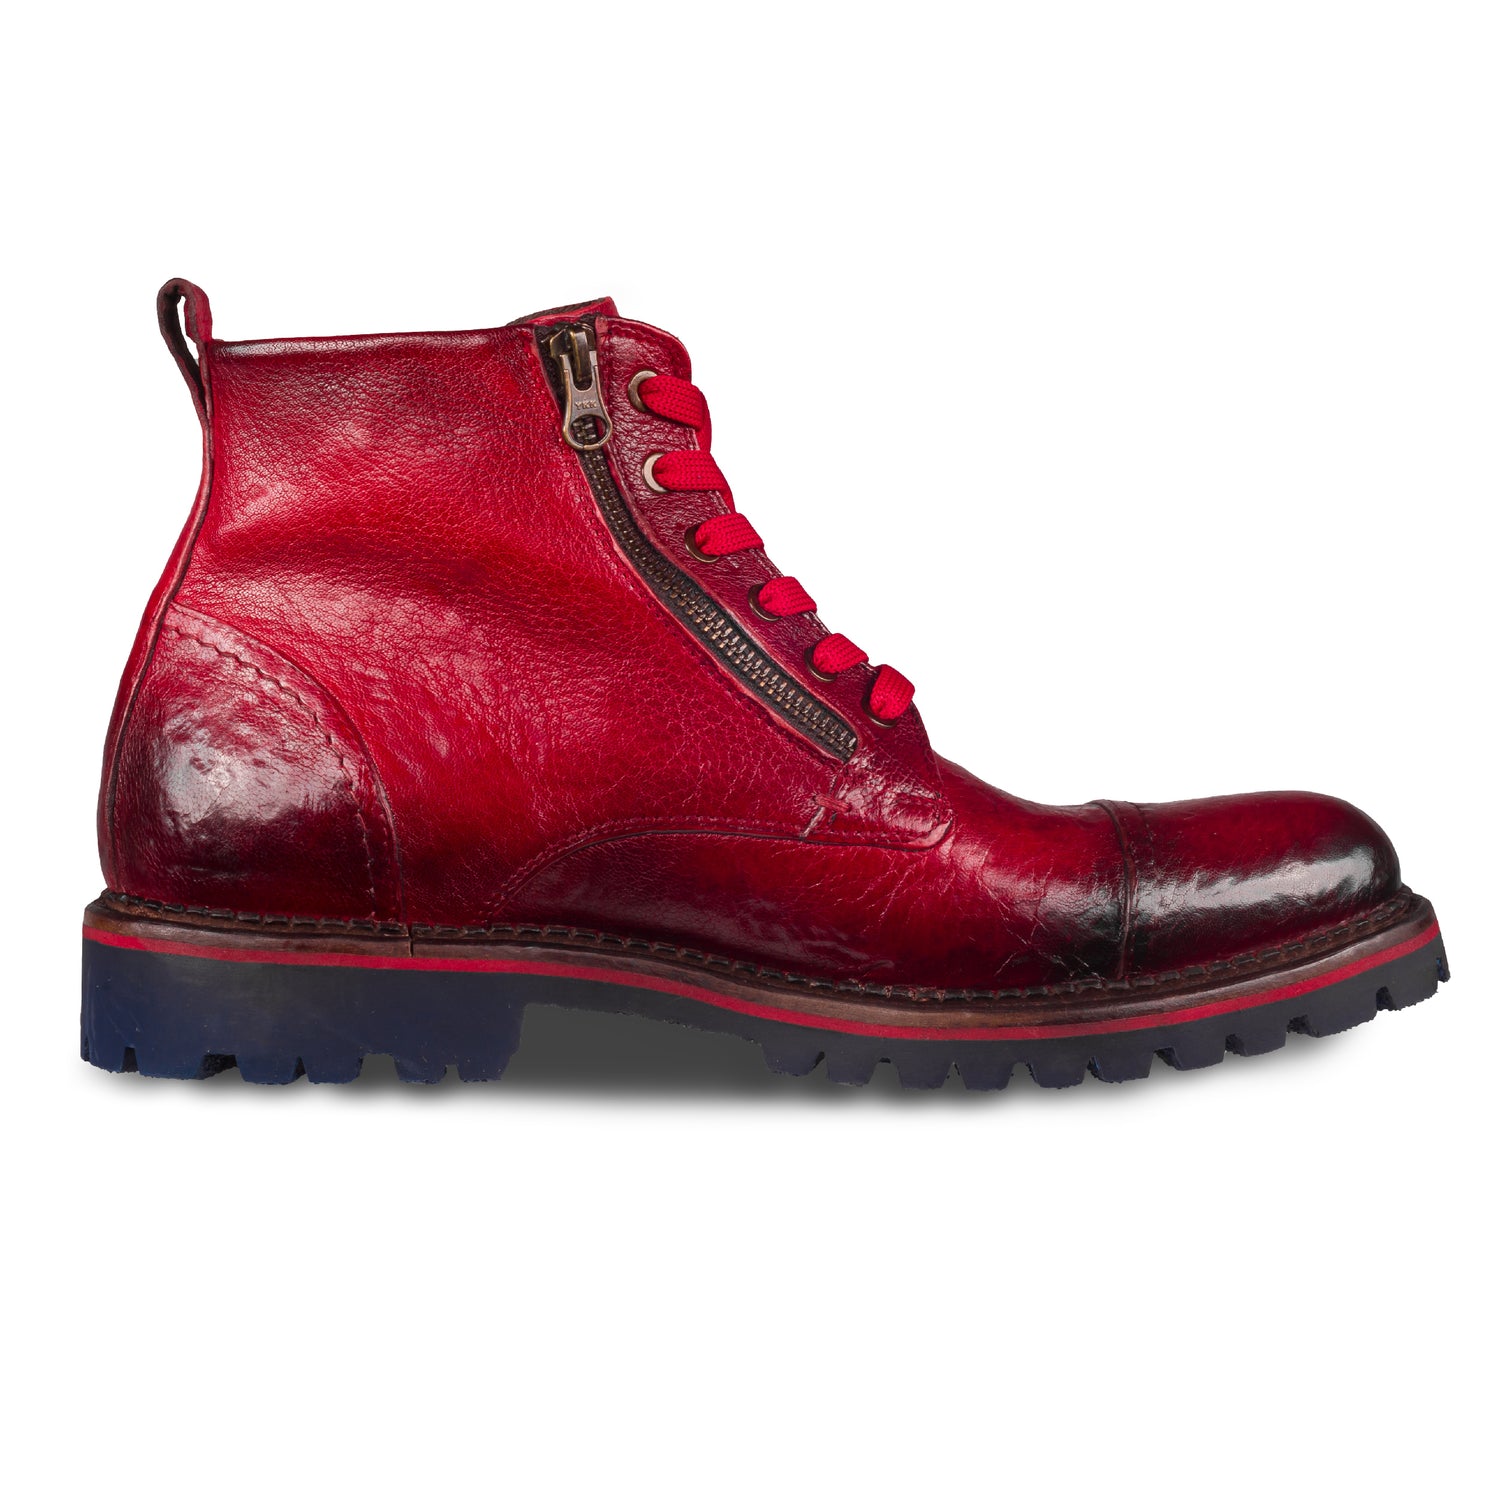 LORENZI - Italienische Herren Schnür-Boots, Kalbsleder-Stiefelette rot. Handgefertigt und durchgenäht. Seitliche Ansicht der Innenseite linker Schuh.